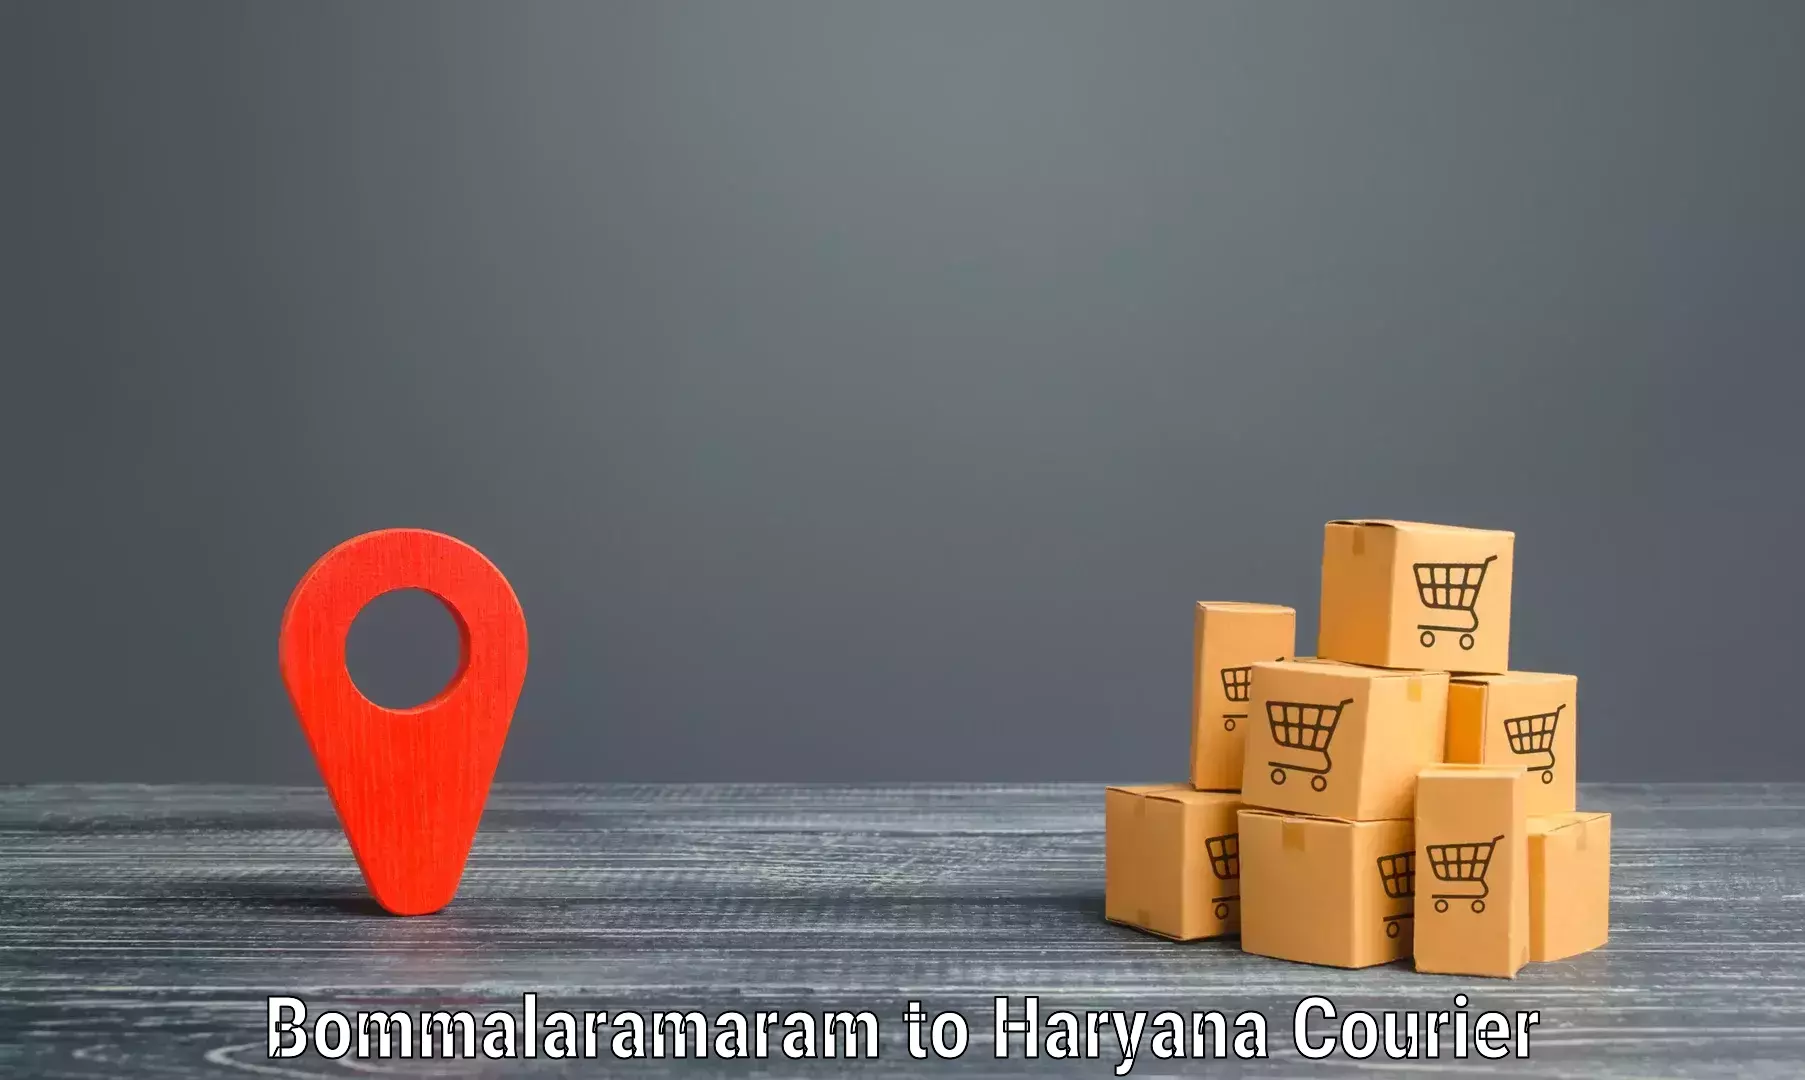 Professional courier handling Bommalaramaram to Gurugram